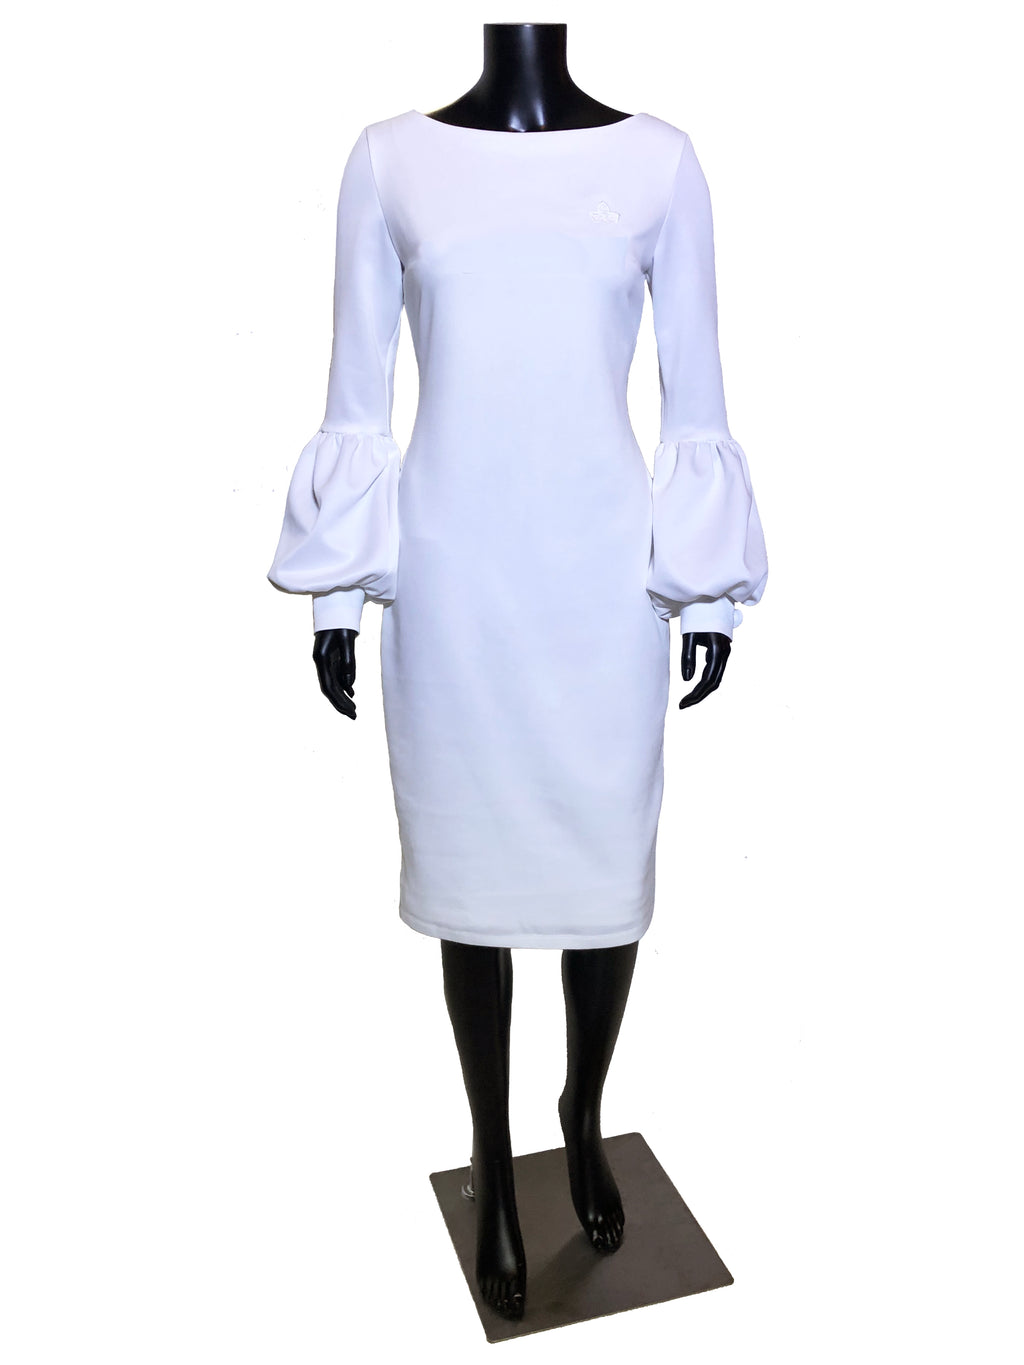 Royal Bishop-Sleeve Dress (White, Black or Green)